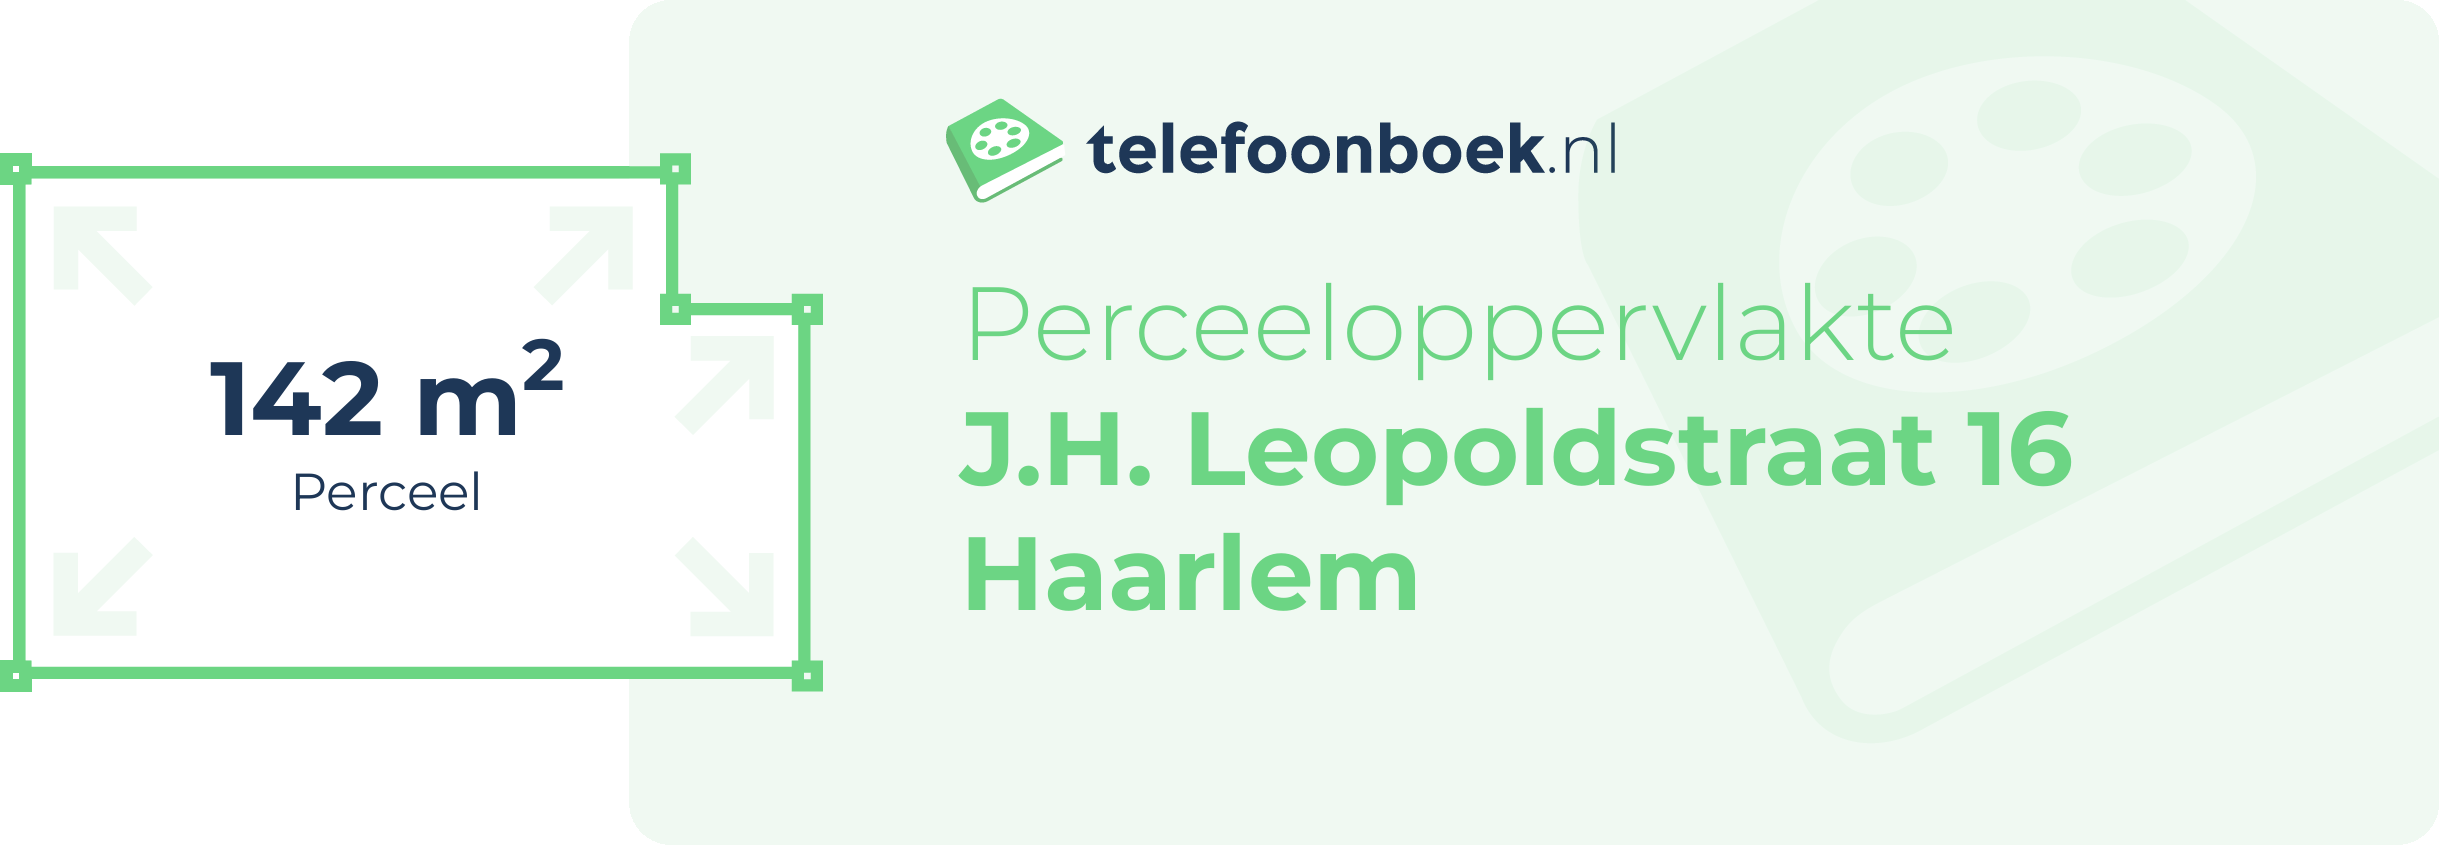 Perceeloppervlakte J.H. Leopoldstraat 16 Haarlem